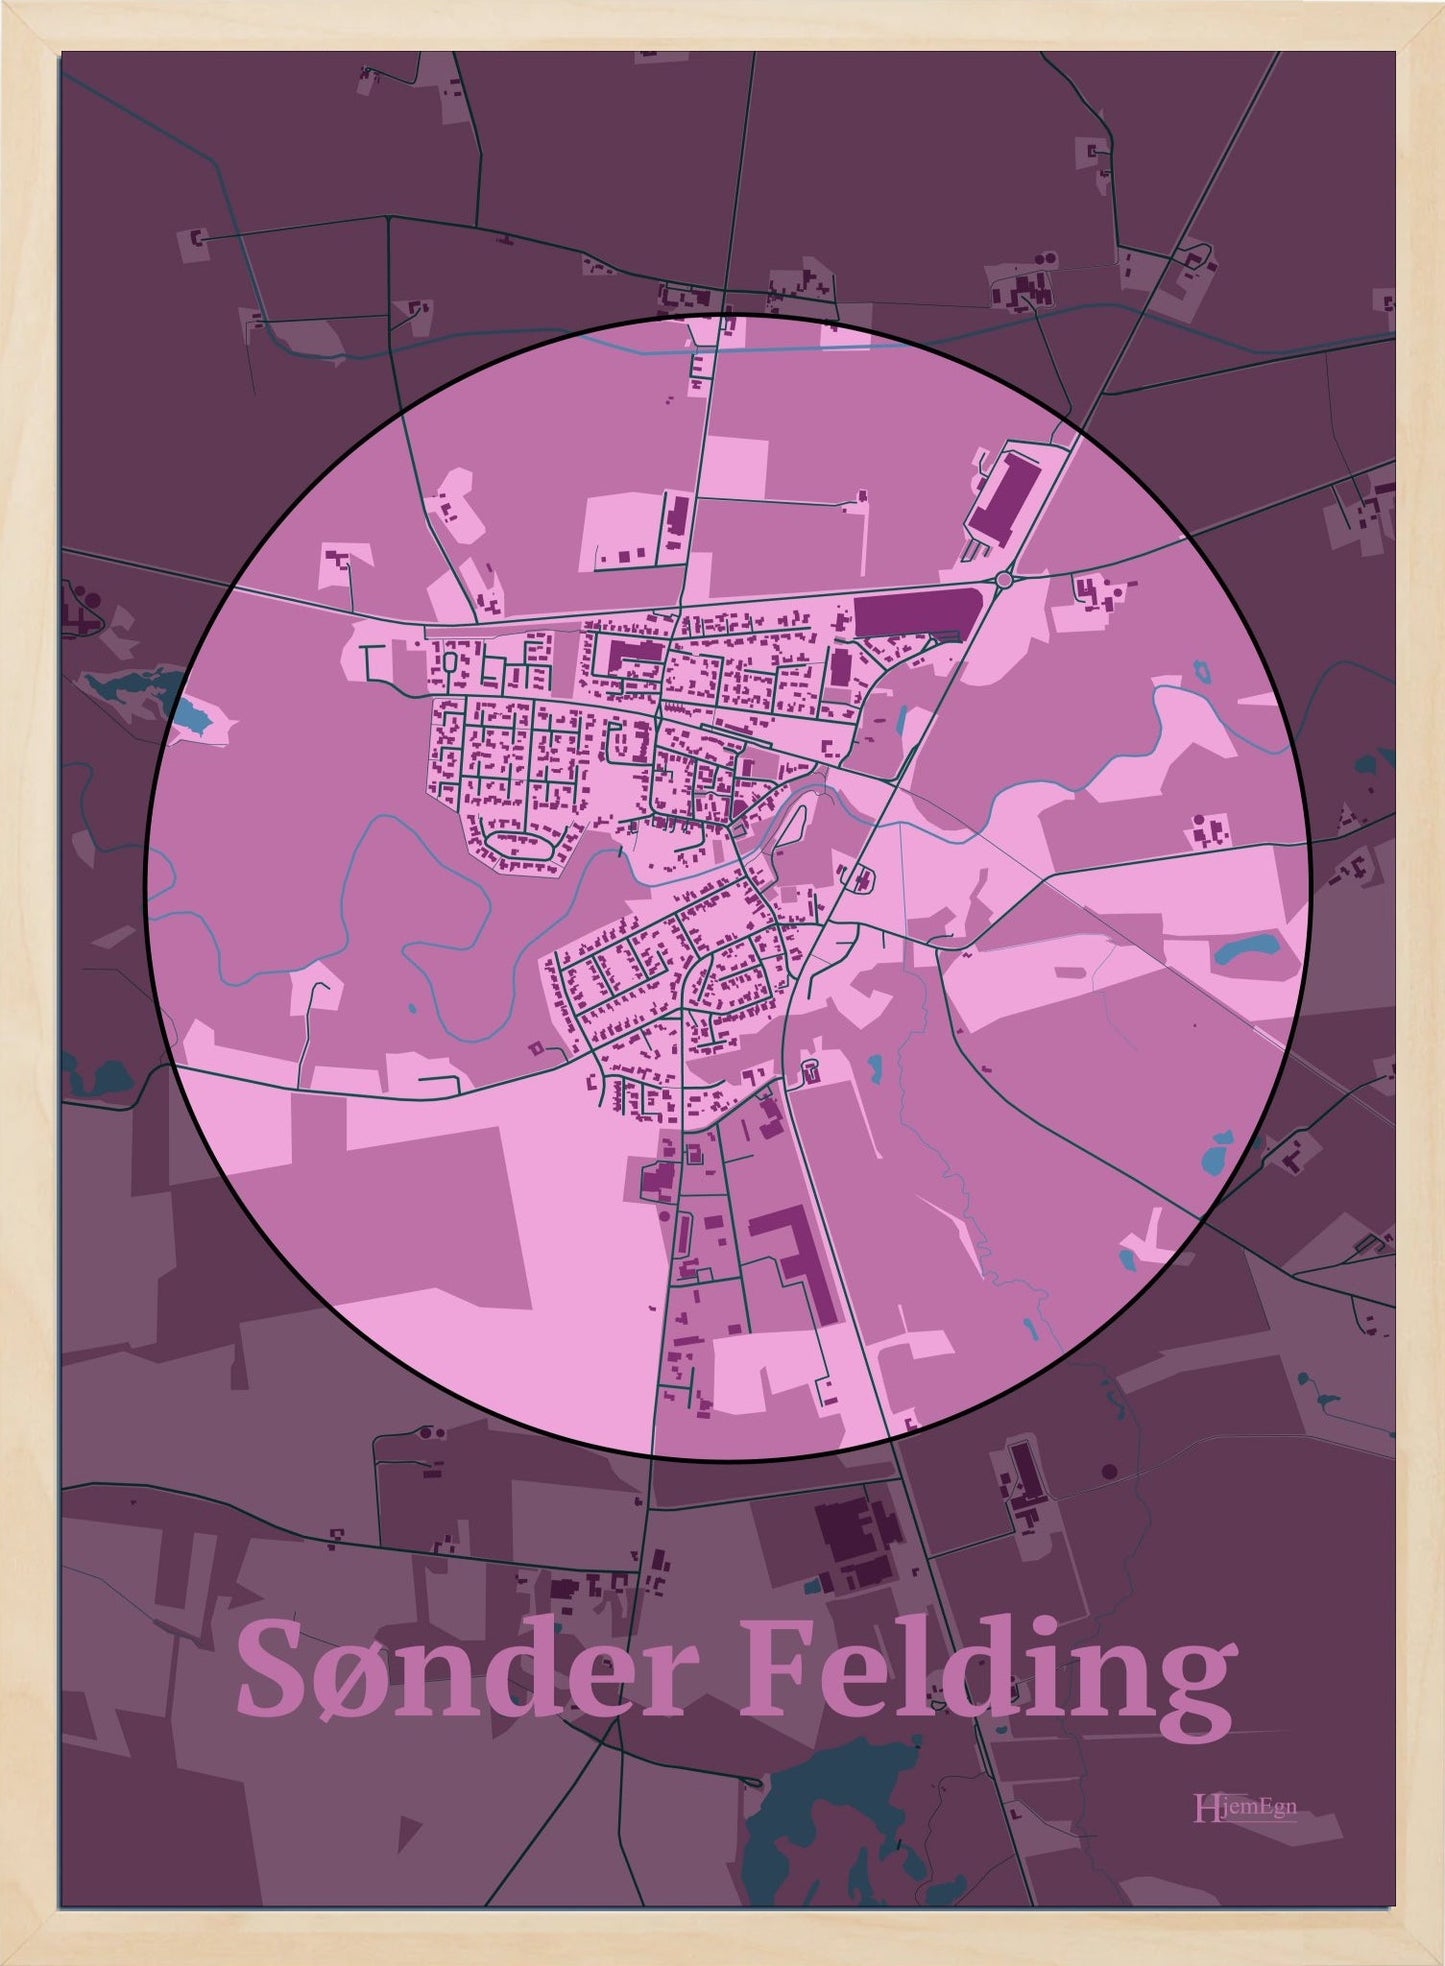 Sønder Felding plakat i farve pastel rød og HjemEgn.dk design centrum. Design bykort for Sønder Felding